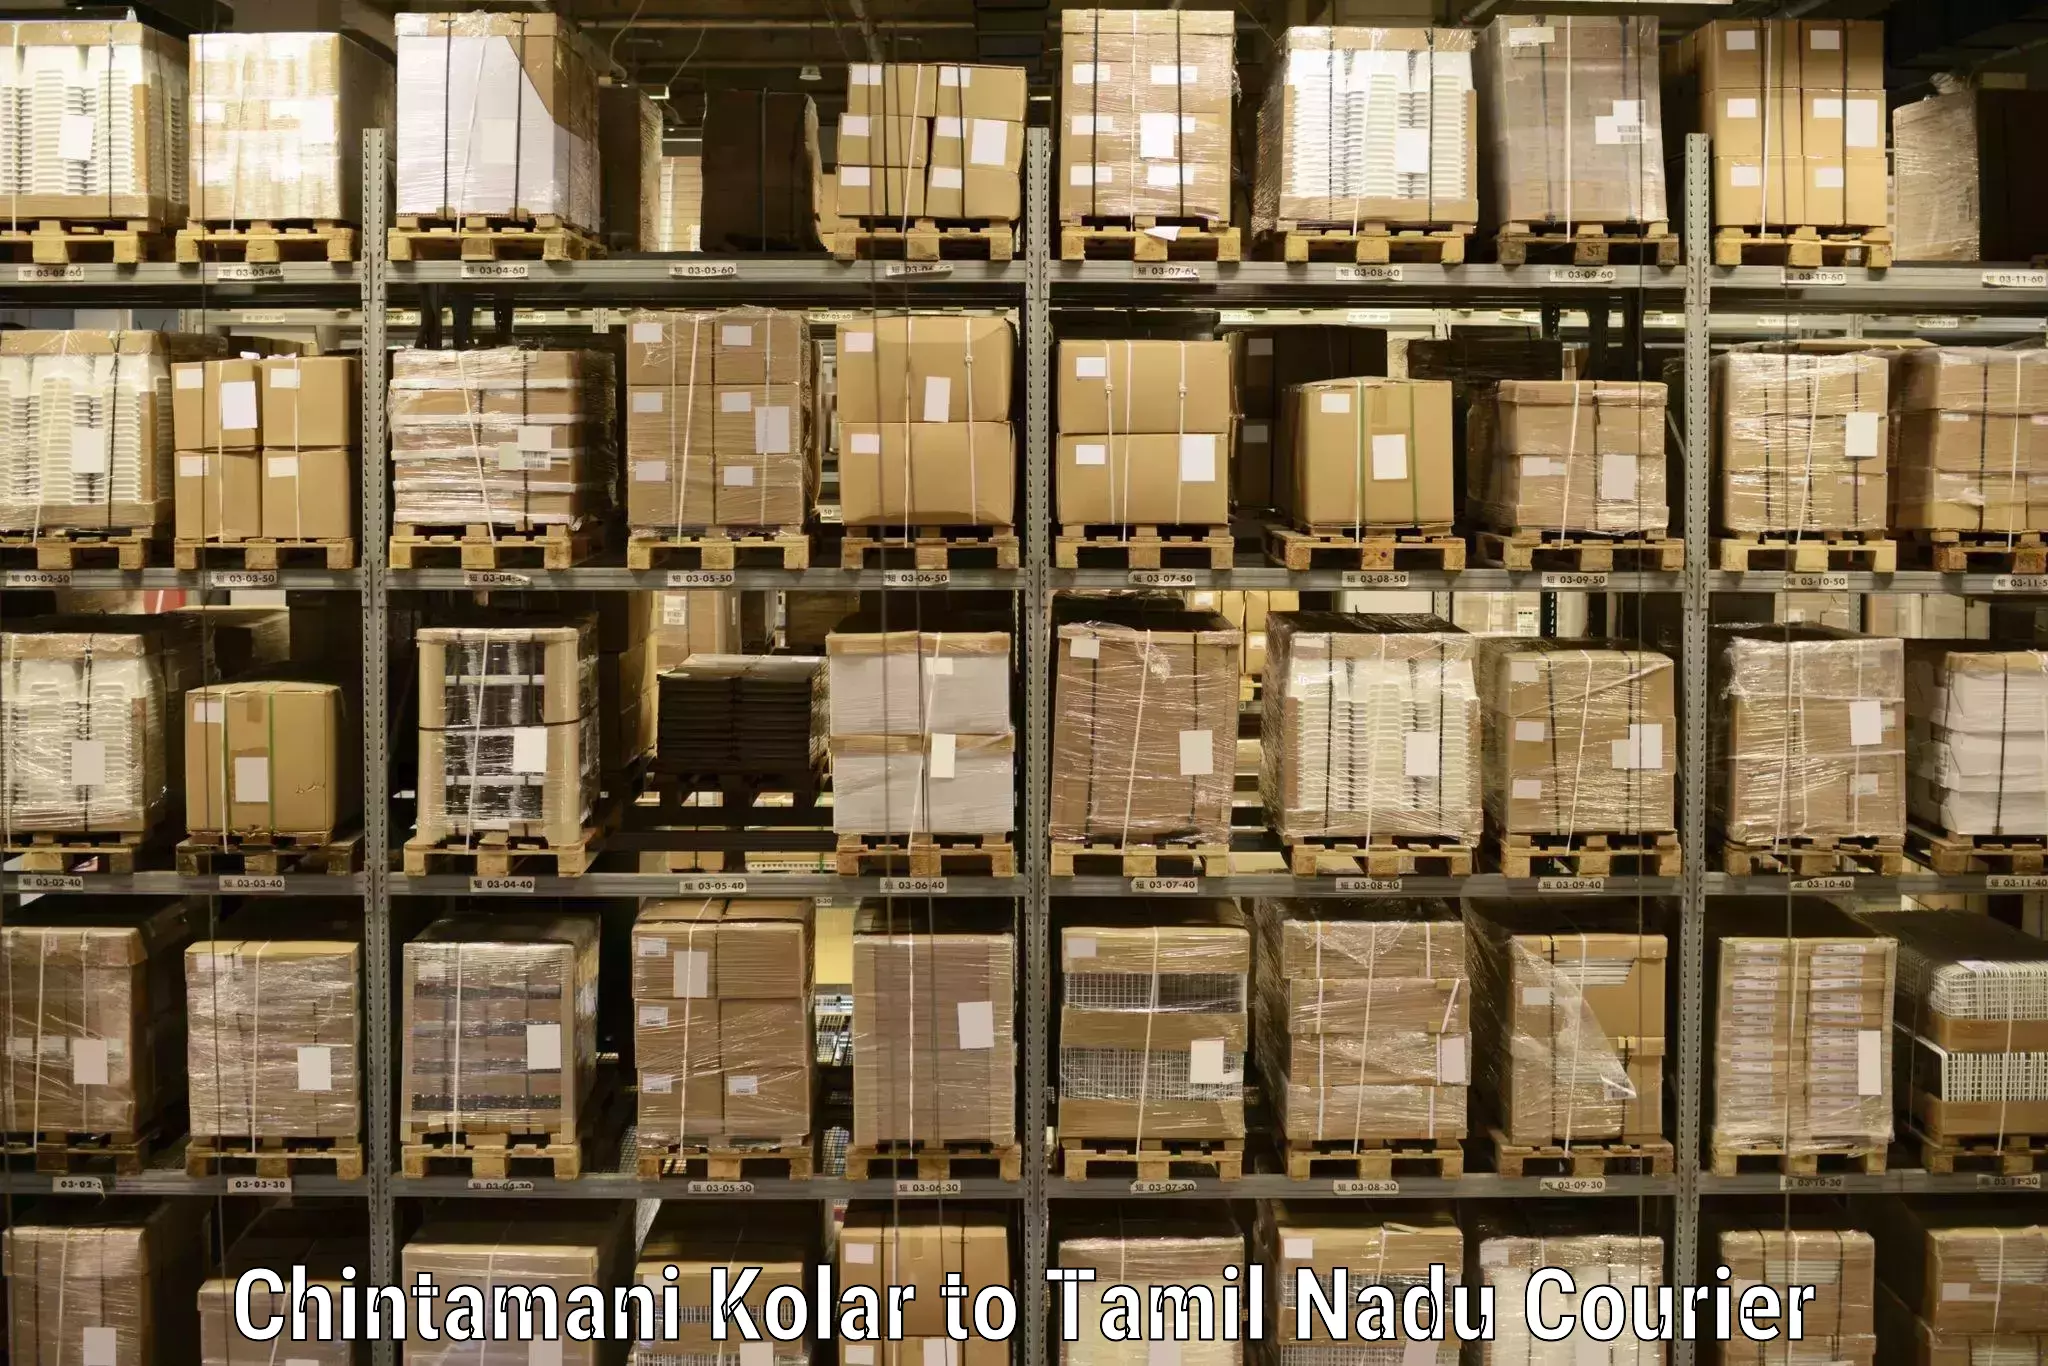 Premium courier solutions Chintamani Kolar to Lalgudi